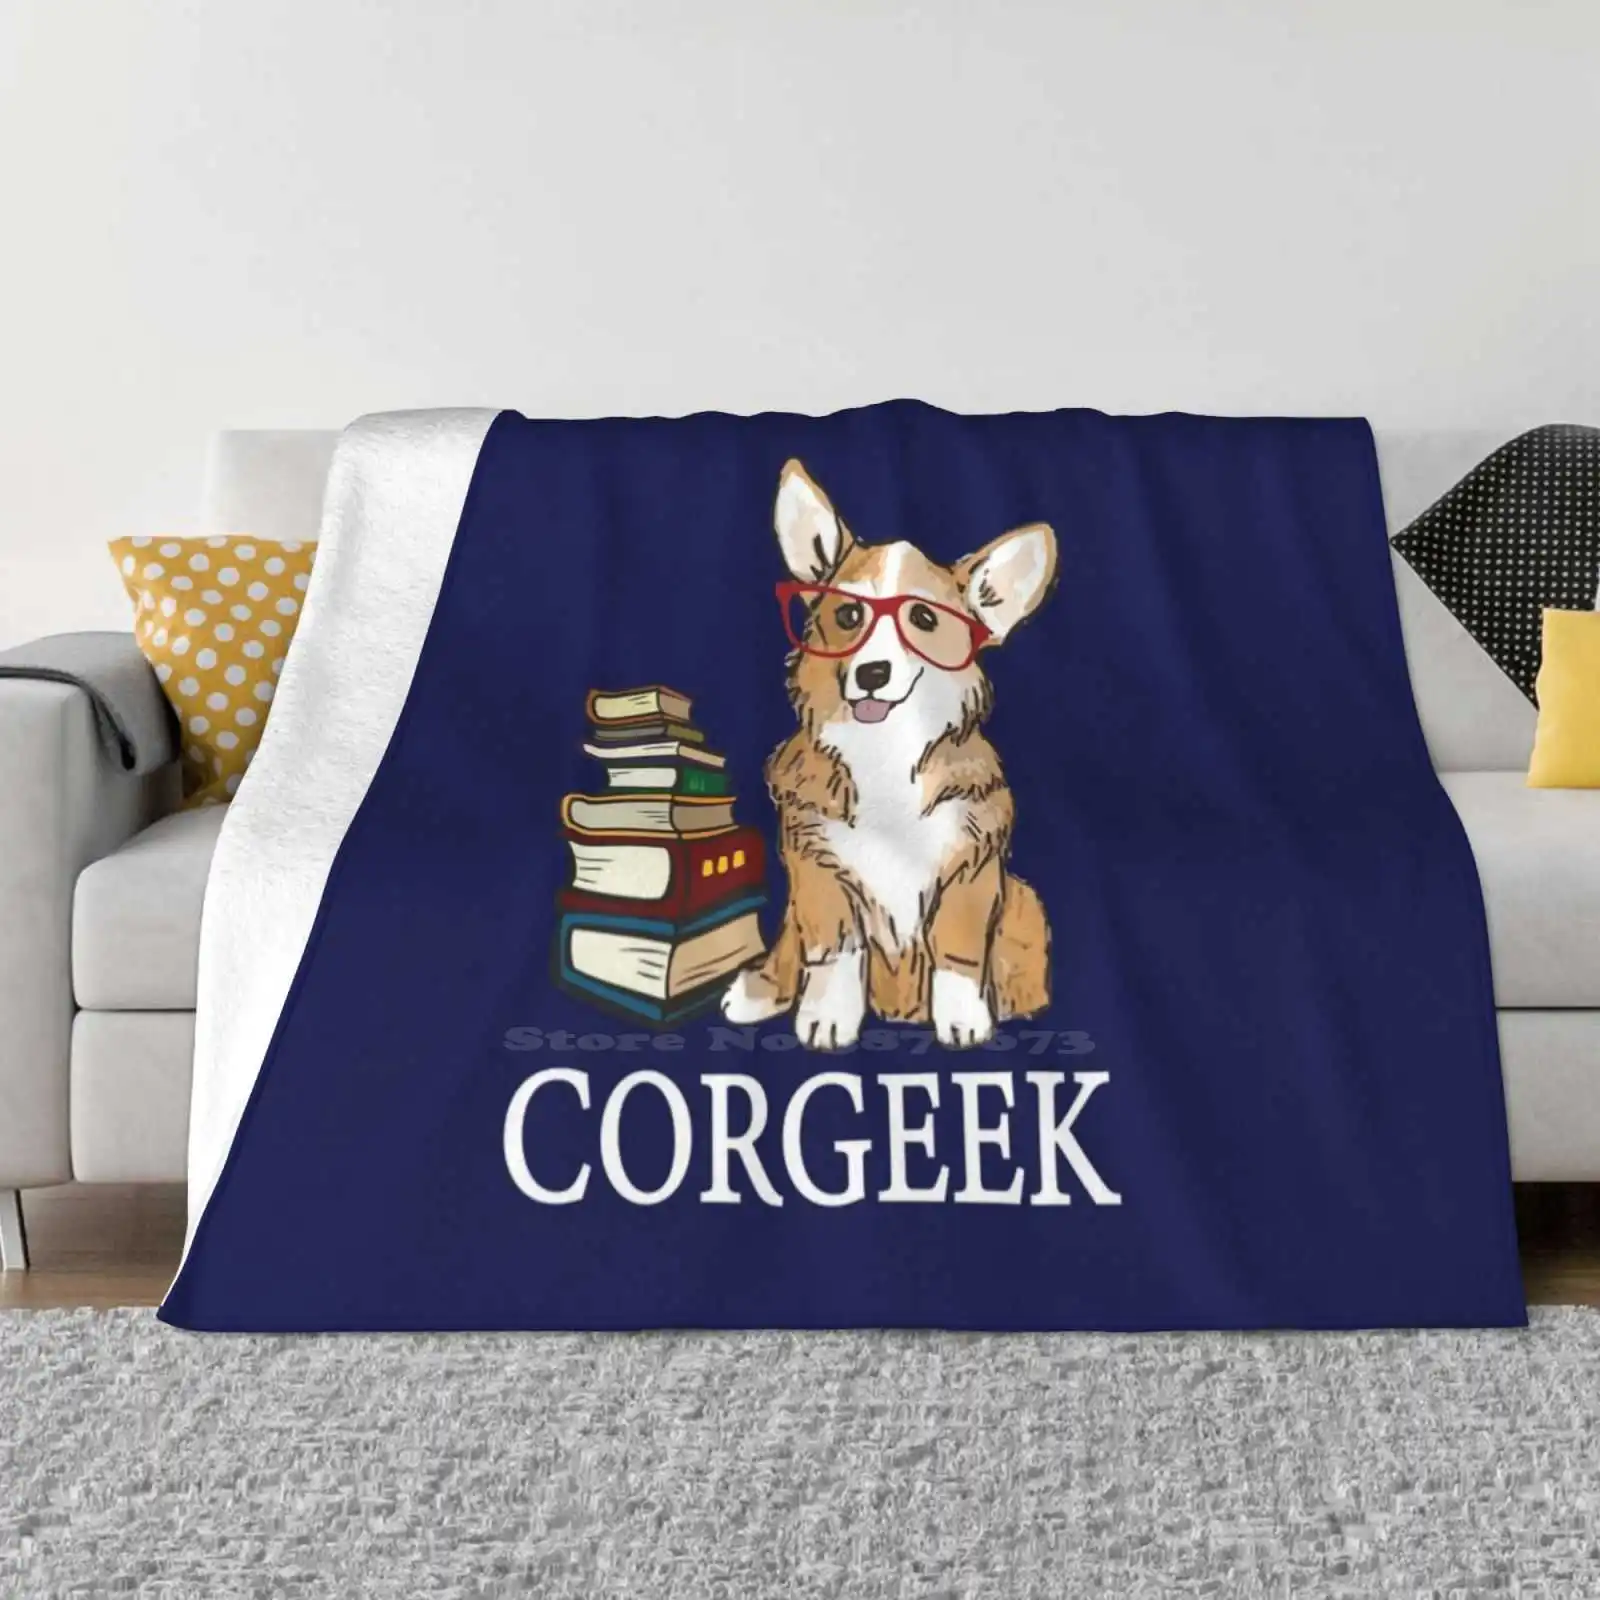 

Corgi для любителей книг, чтения книг, читателей или учителей английского языка-одеяло Corgeek, мягкое теплое дорожное портативное одеяло Corgi